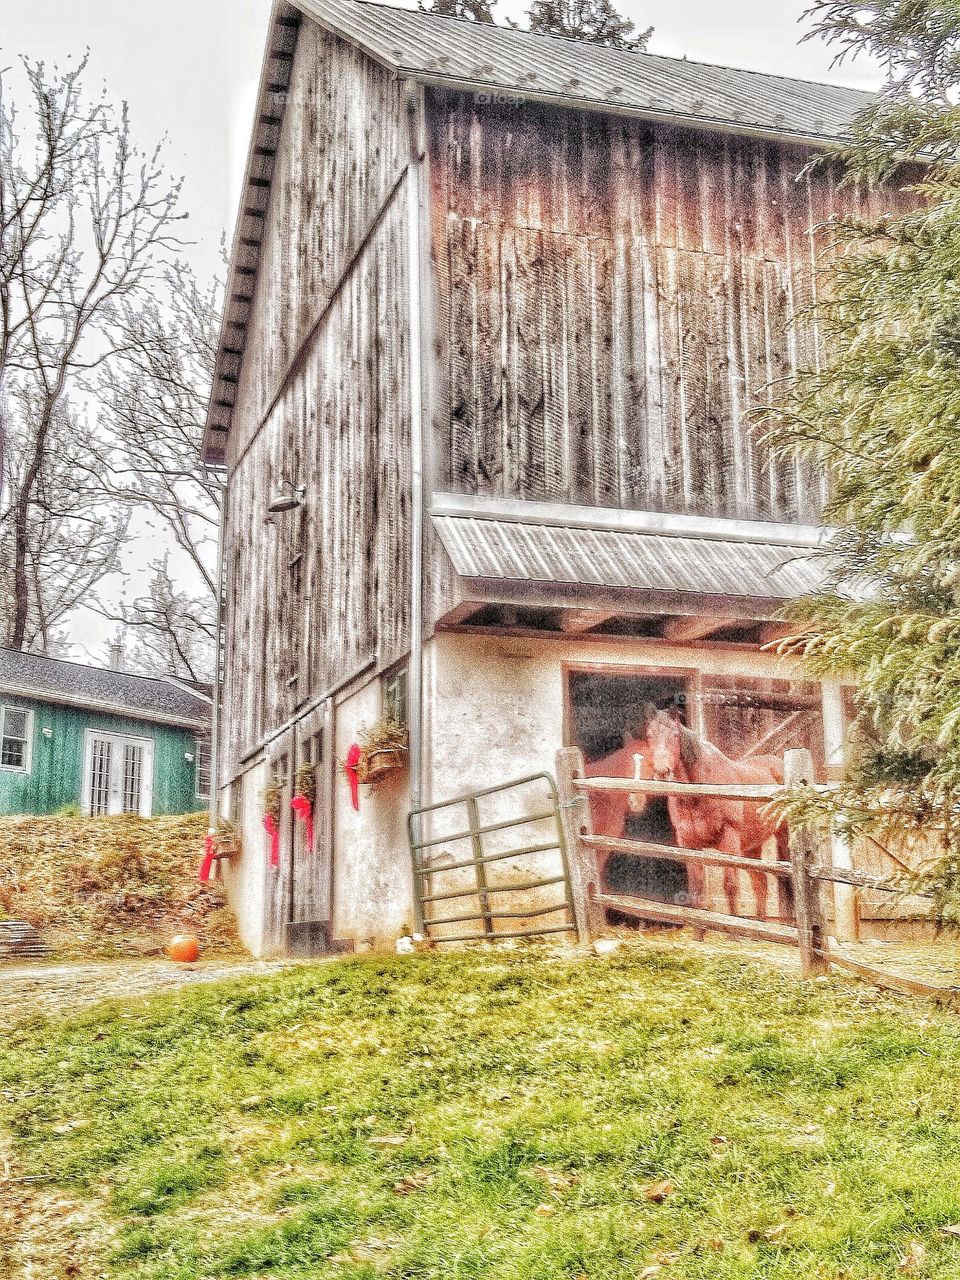 barn scene in rural landscape